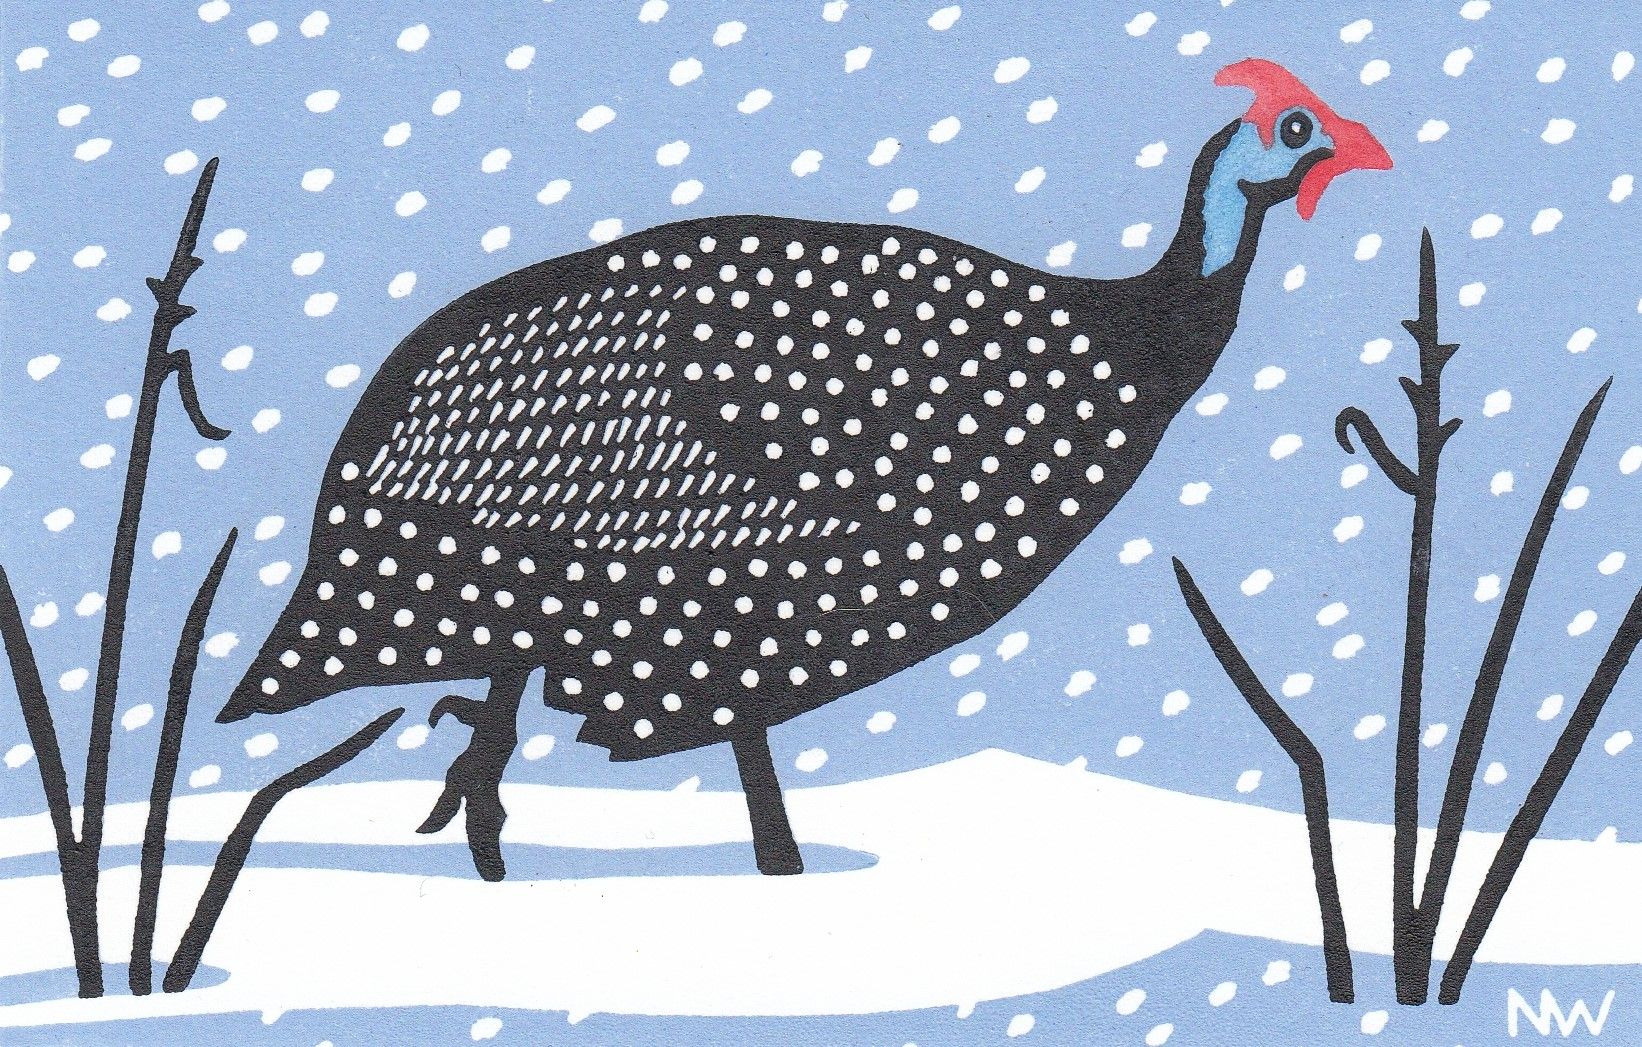 Snowy Fowl by Nick Wonham